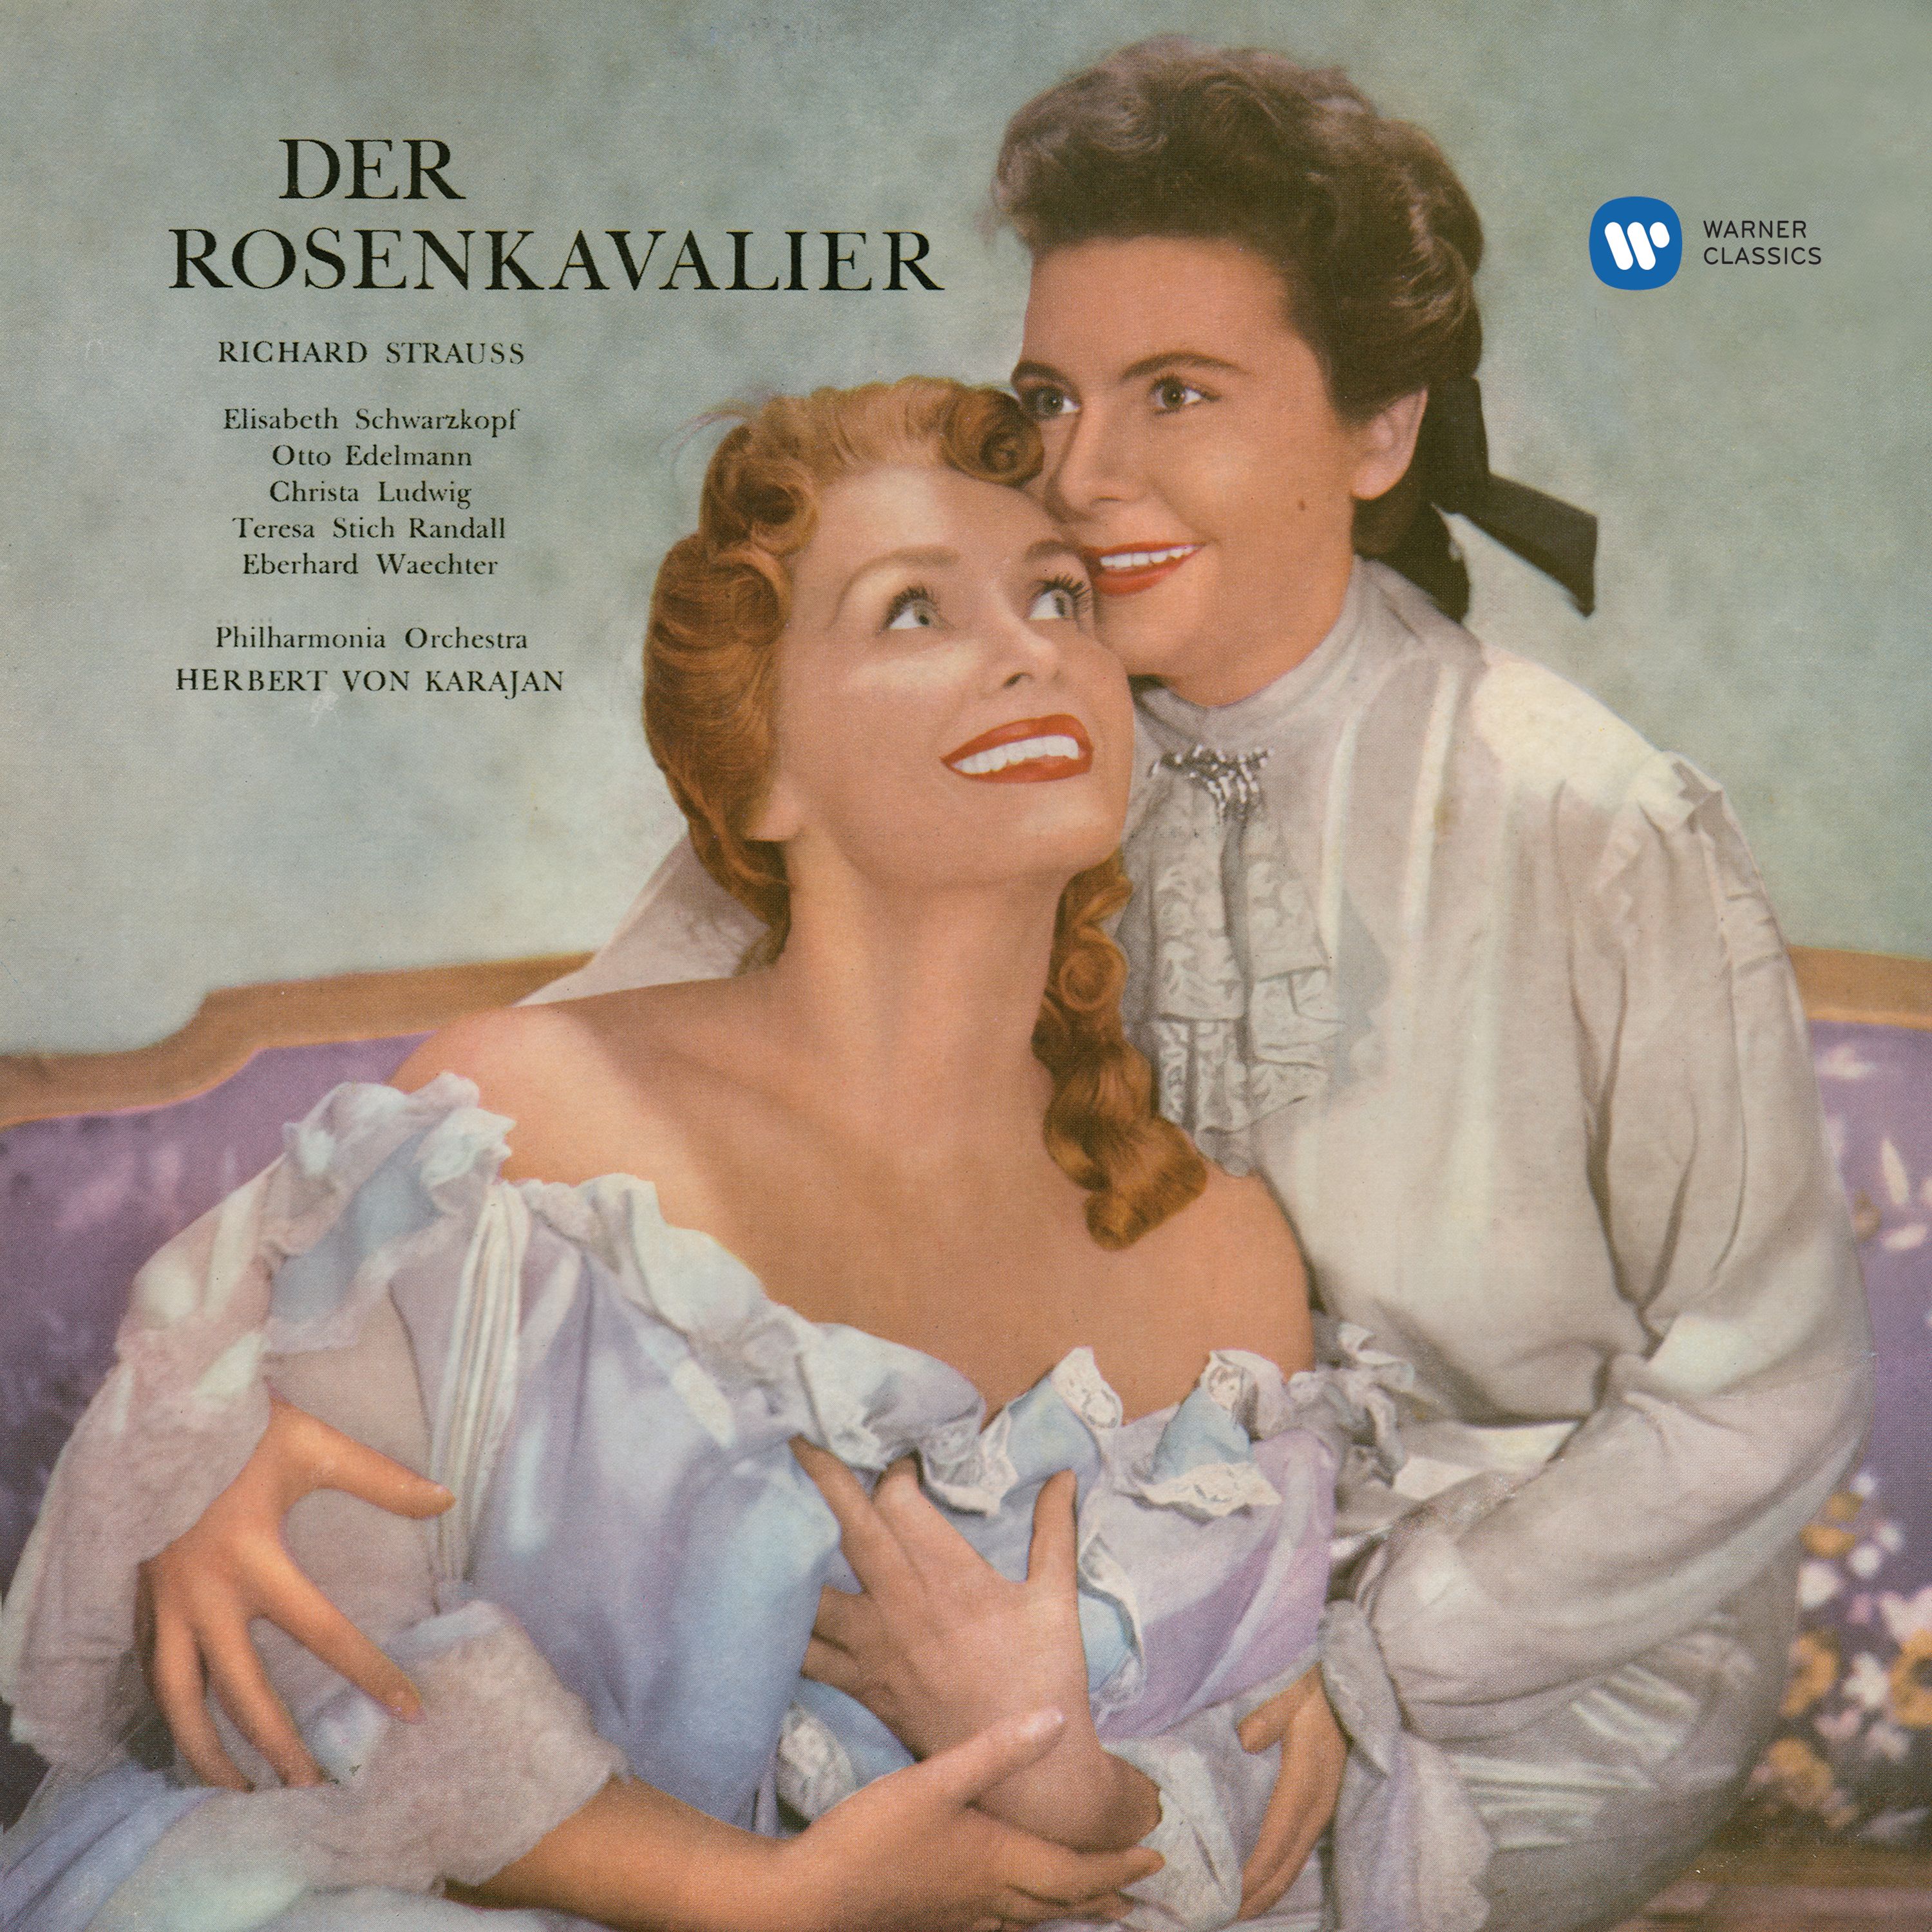 Der Rosenkavalier, Op. 59, Act 2: "Möcht' wissen, was Ihm dünkt von mir und Ihm" (Sophie, Faninal, Ochs, Octavian, Marianne)